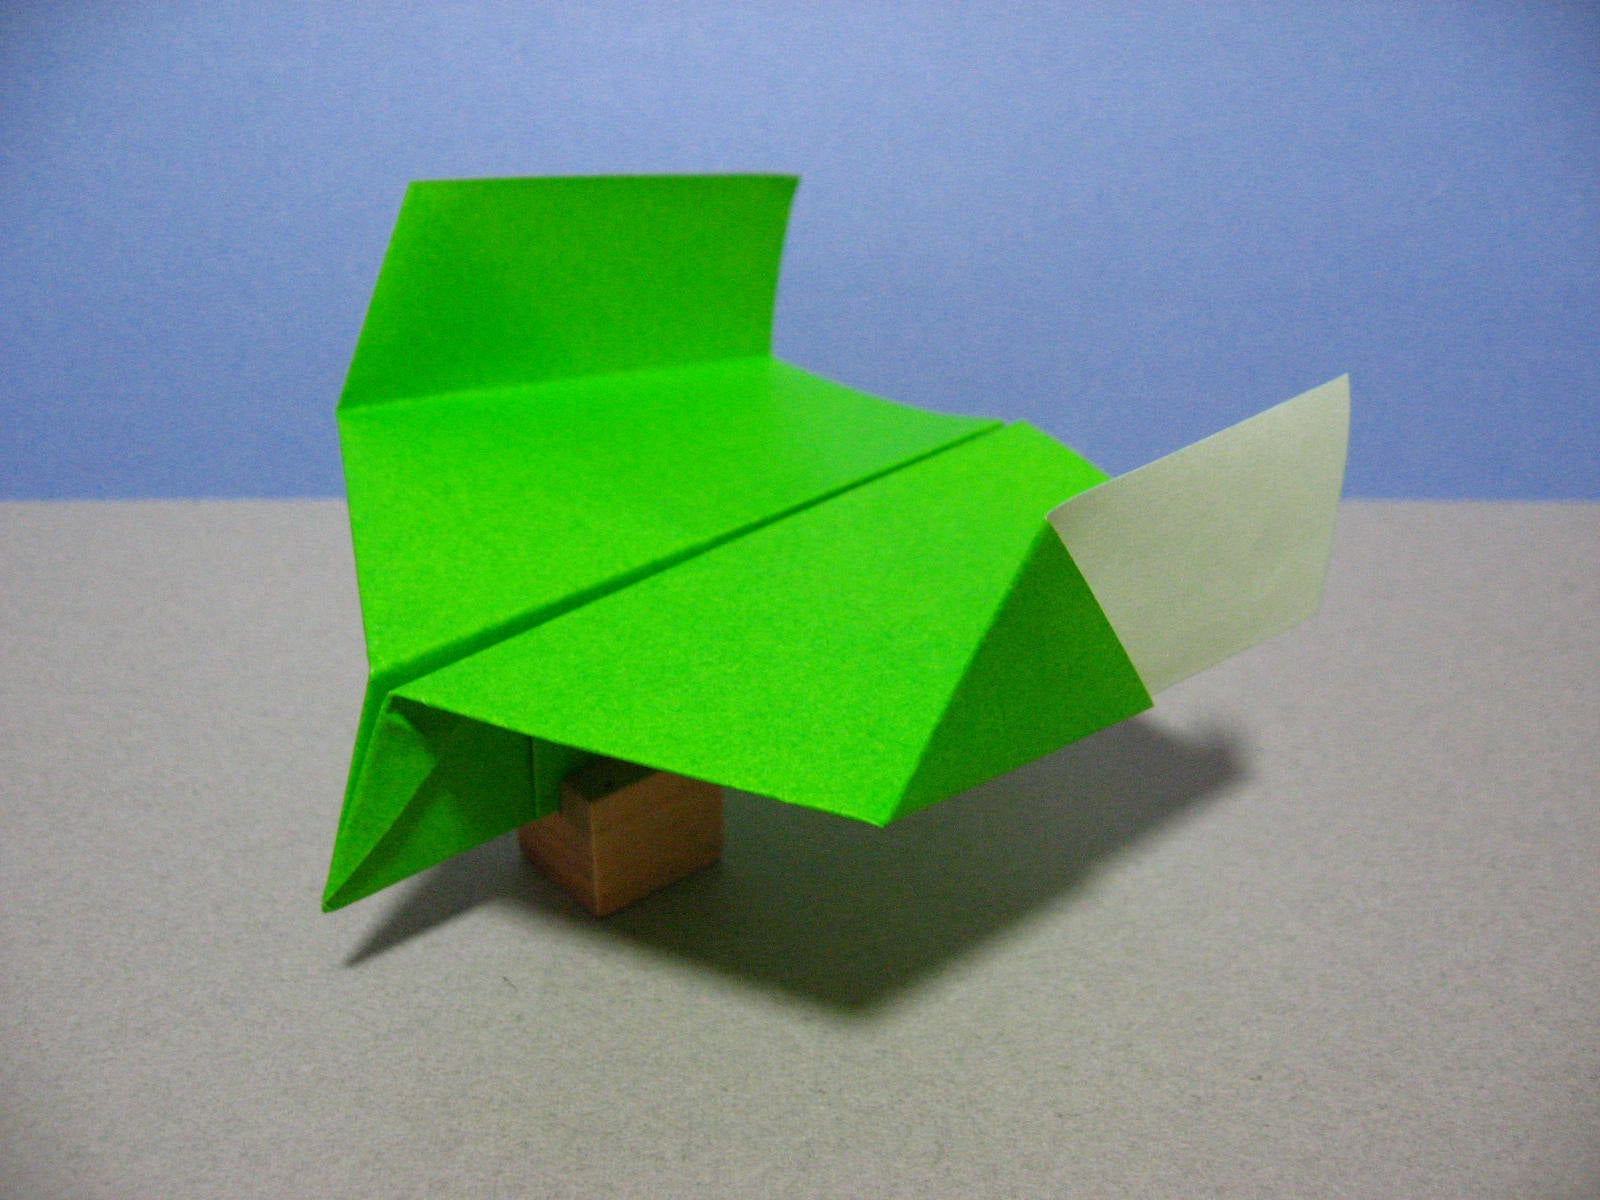 良く飛ぶ紙飛行機と 滑空する紙飛行機の違いは 紙飛行機の折り方